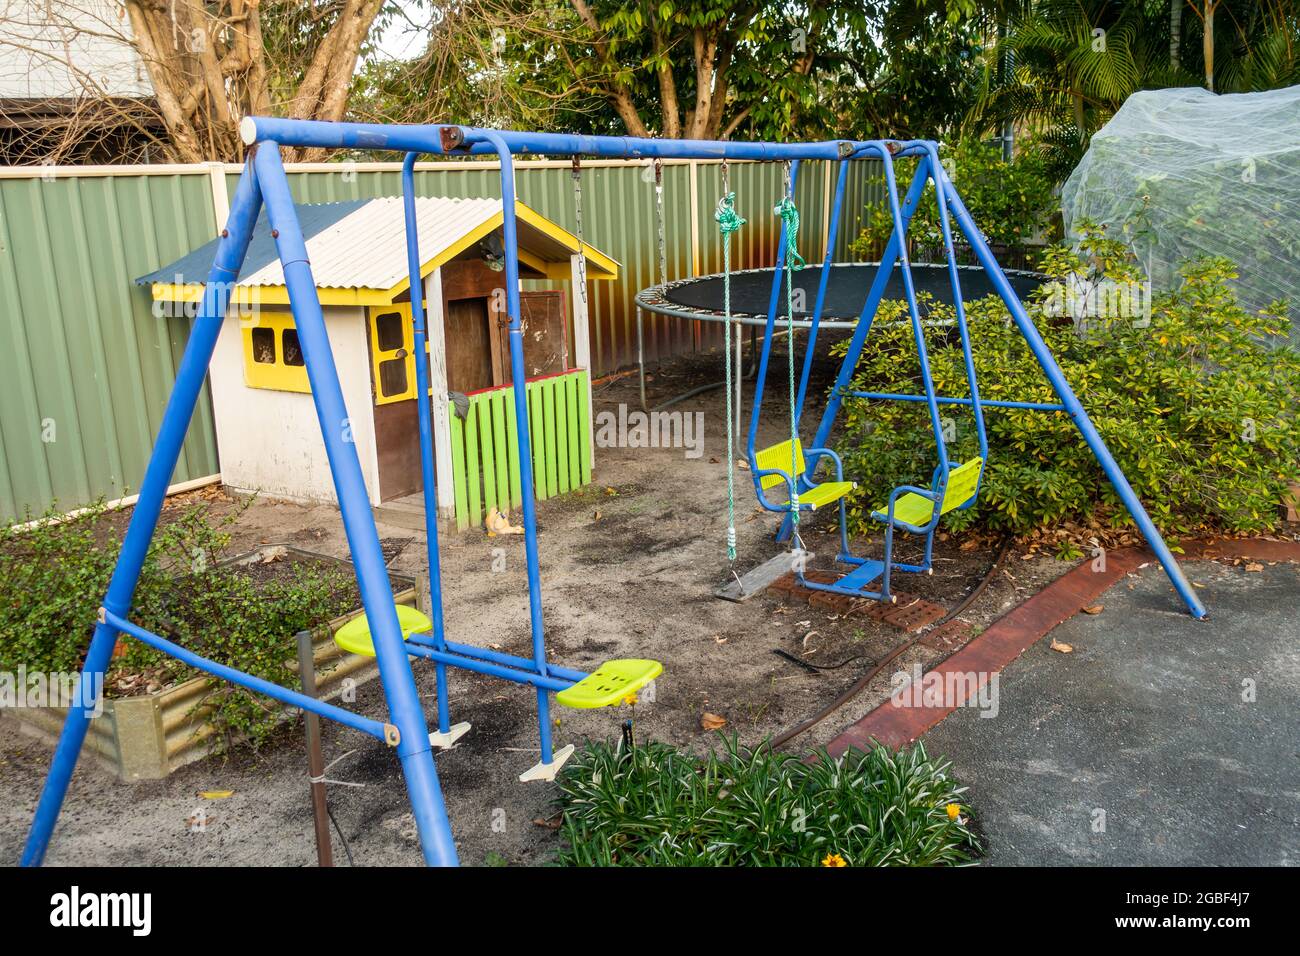 Columpios para niños, y Tranpoline en la esquina del jardín trasero de la casa suburbana, Australia Fotografía de stock Alamy